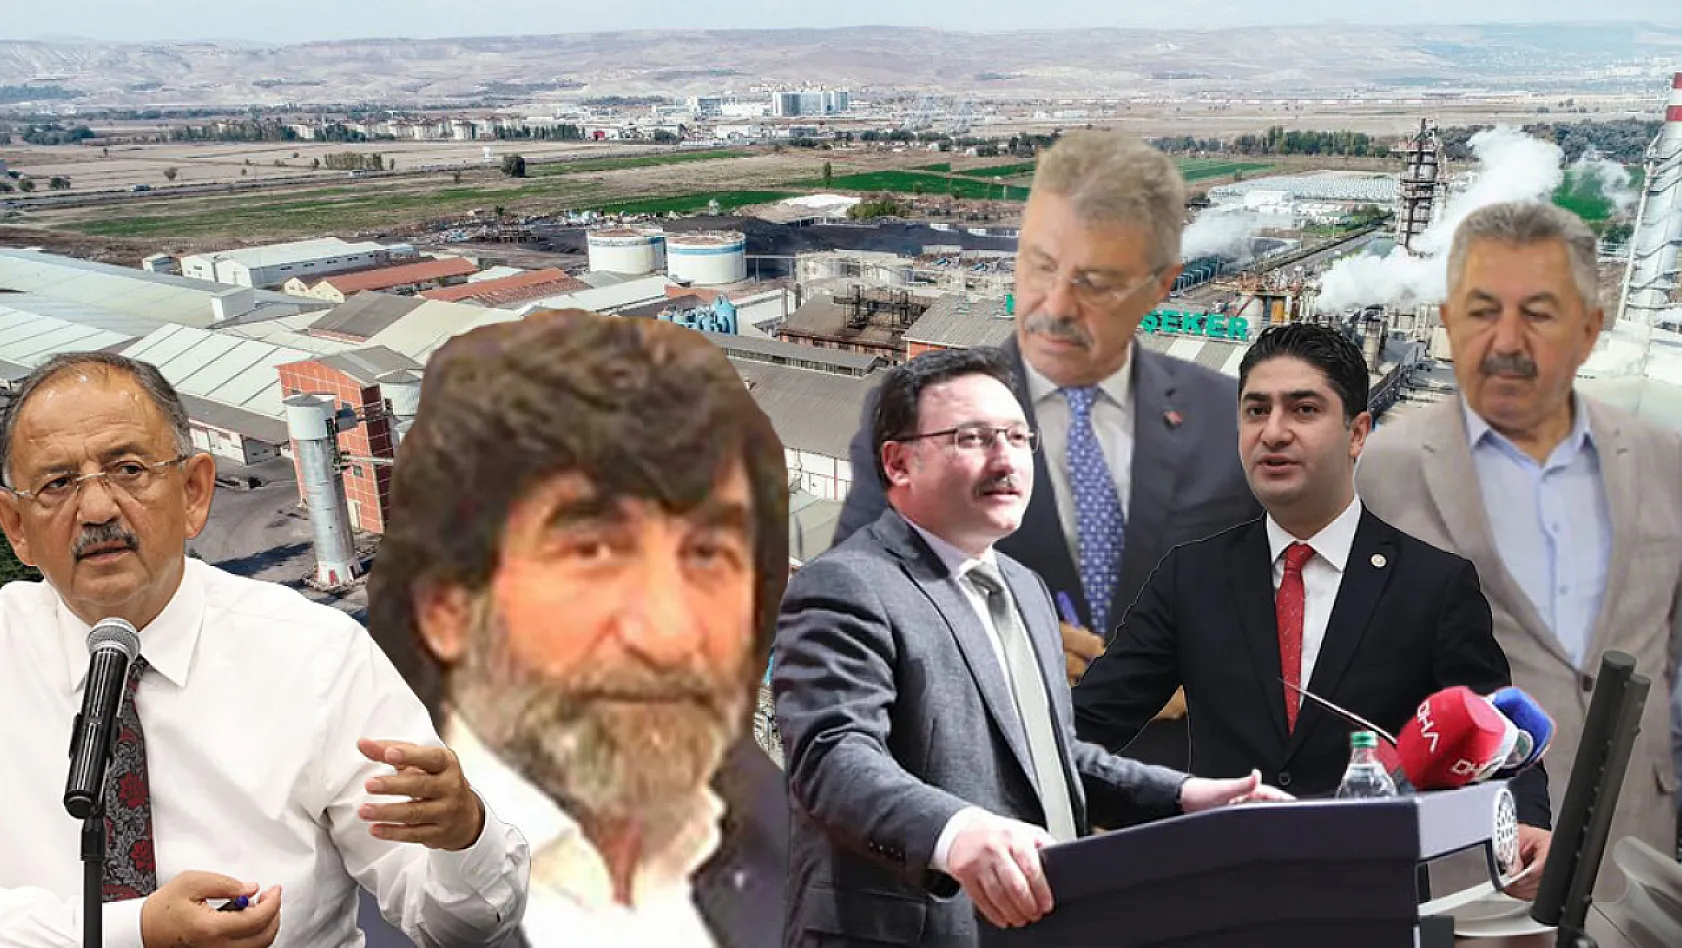 Özhaseki'ye, MHP'li Özdemir'e ve Vali'ye seslendi: Artık bu işe bir el atın, bir dur deyin!